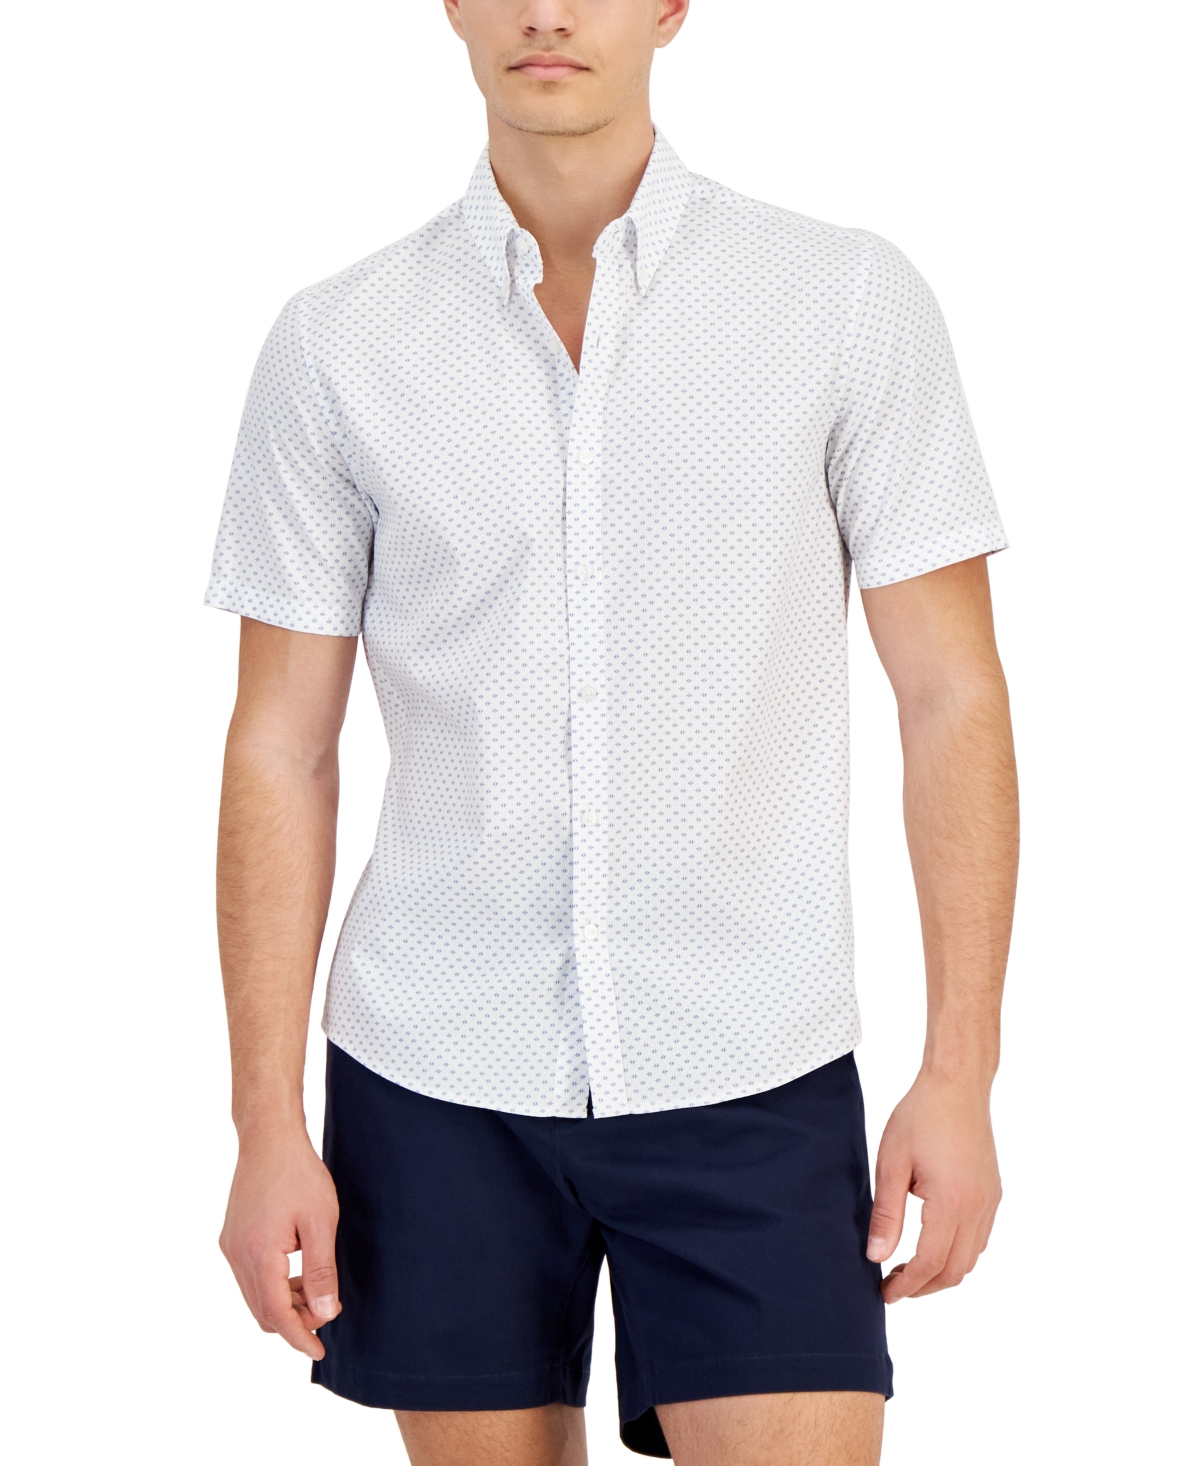 Men's Slim-Fit Stretch Textured Geo-Print Button-Down Shirt - White